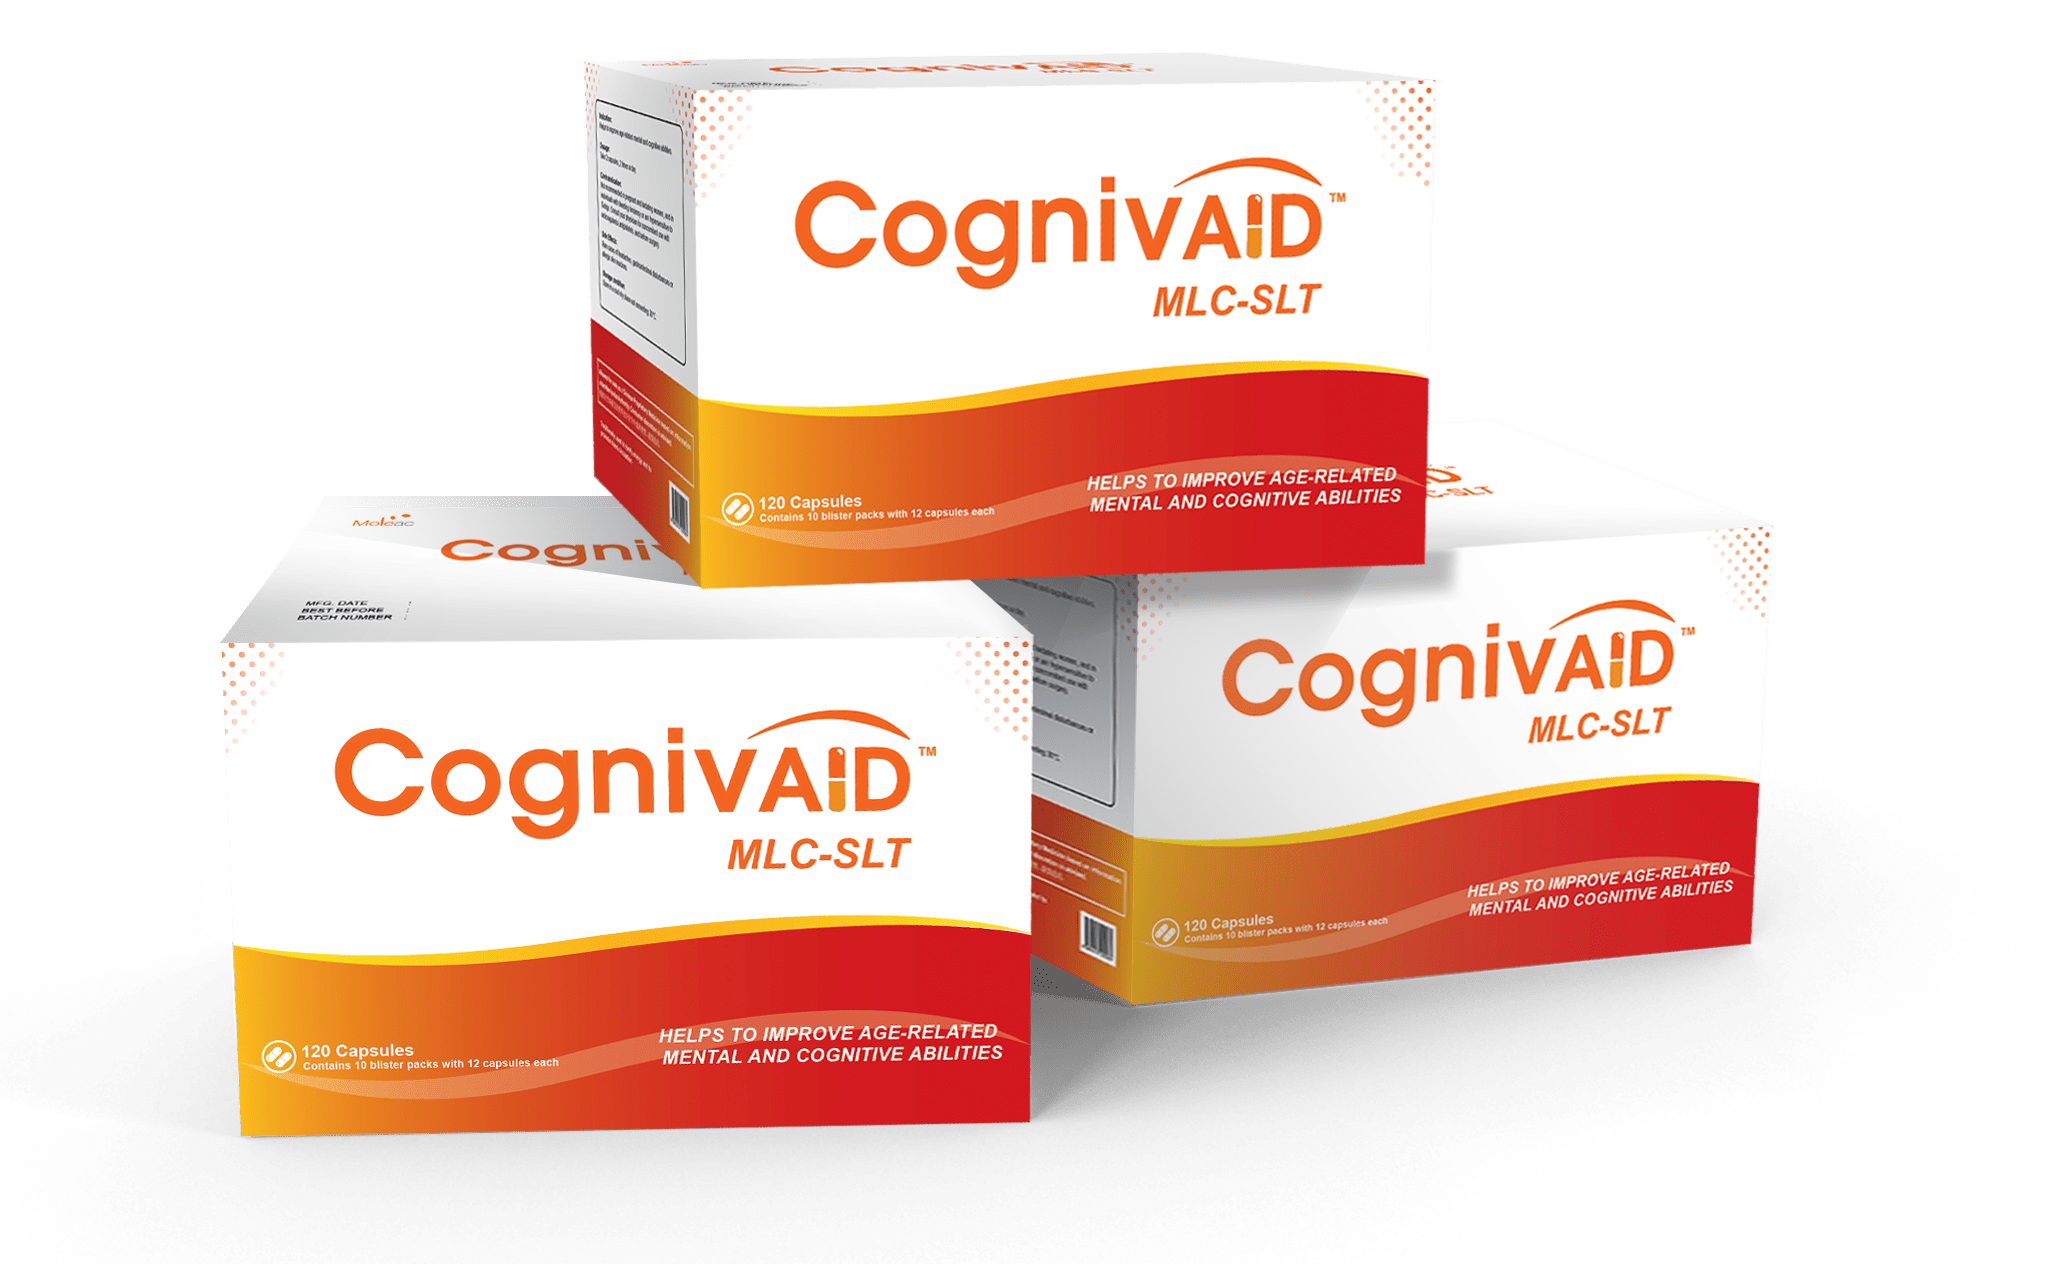 CognivAiD boxes